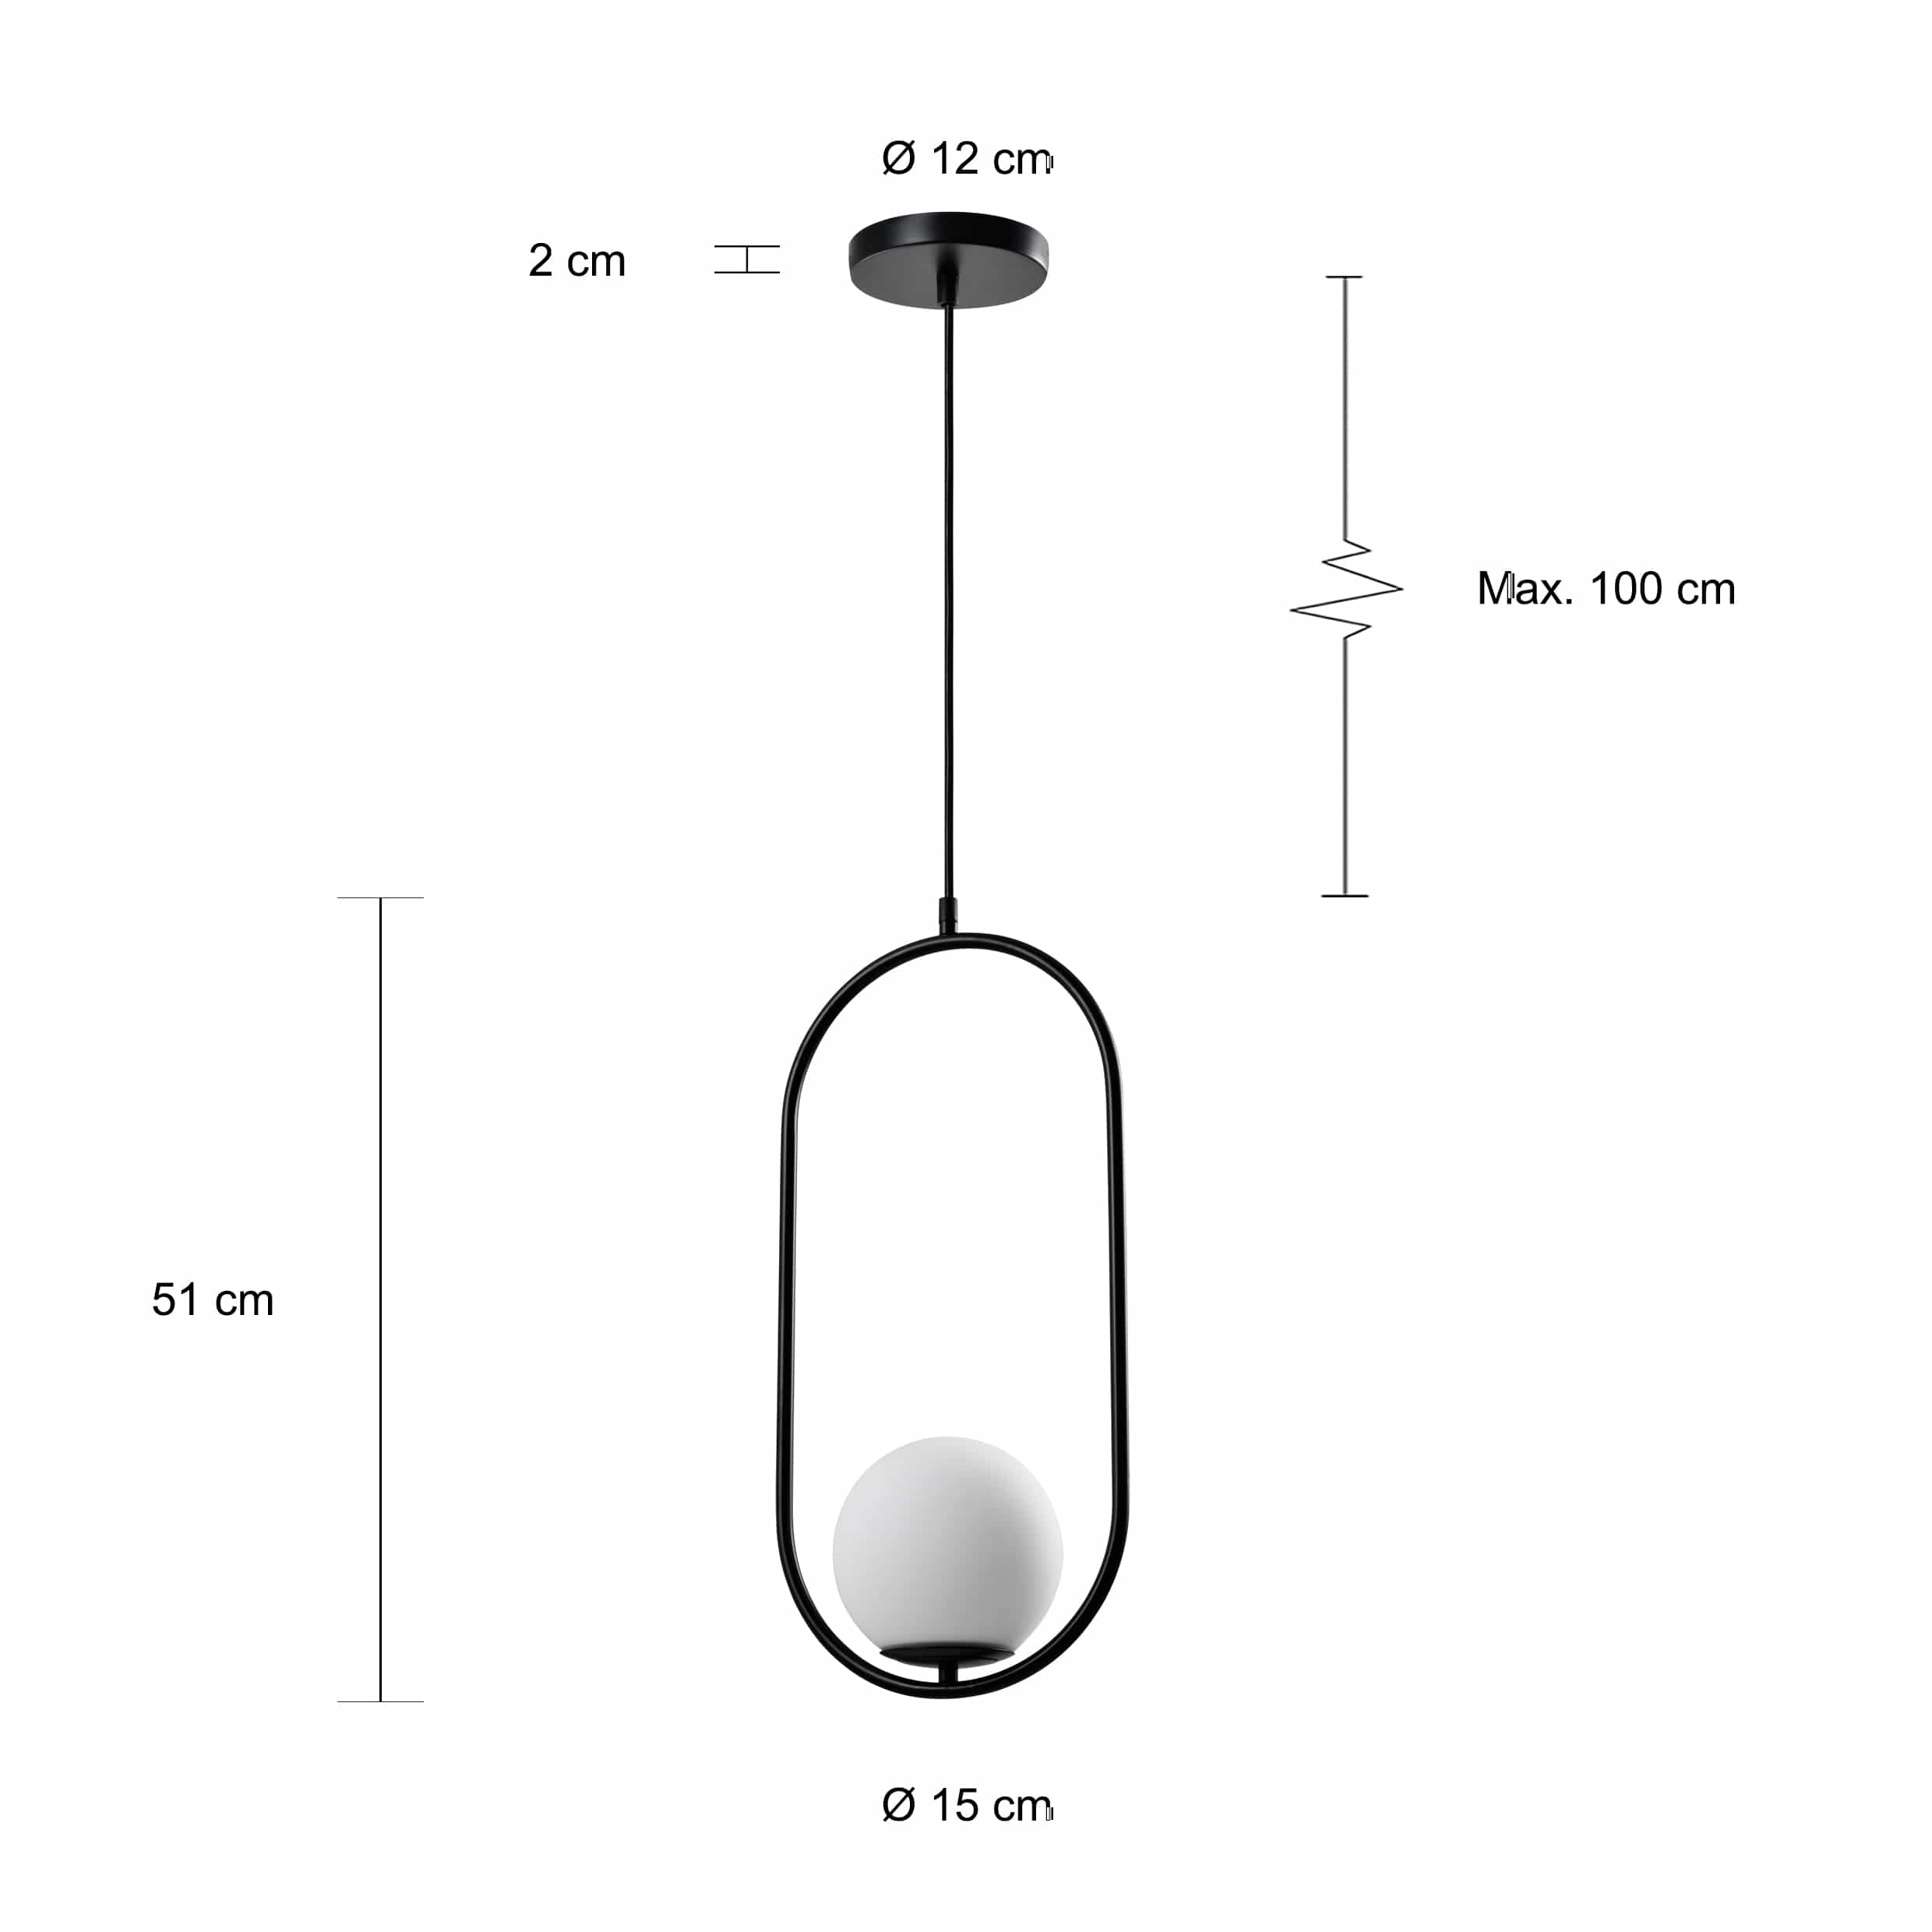 Moderne hanglamp met metalen frame en ronde bal als lamp